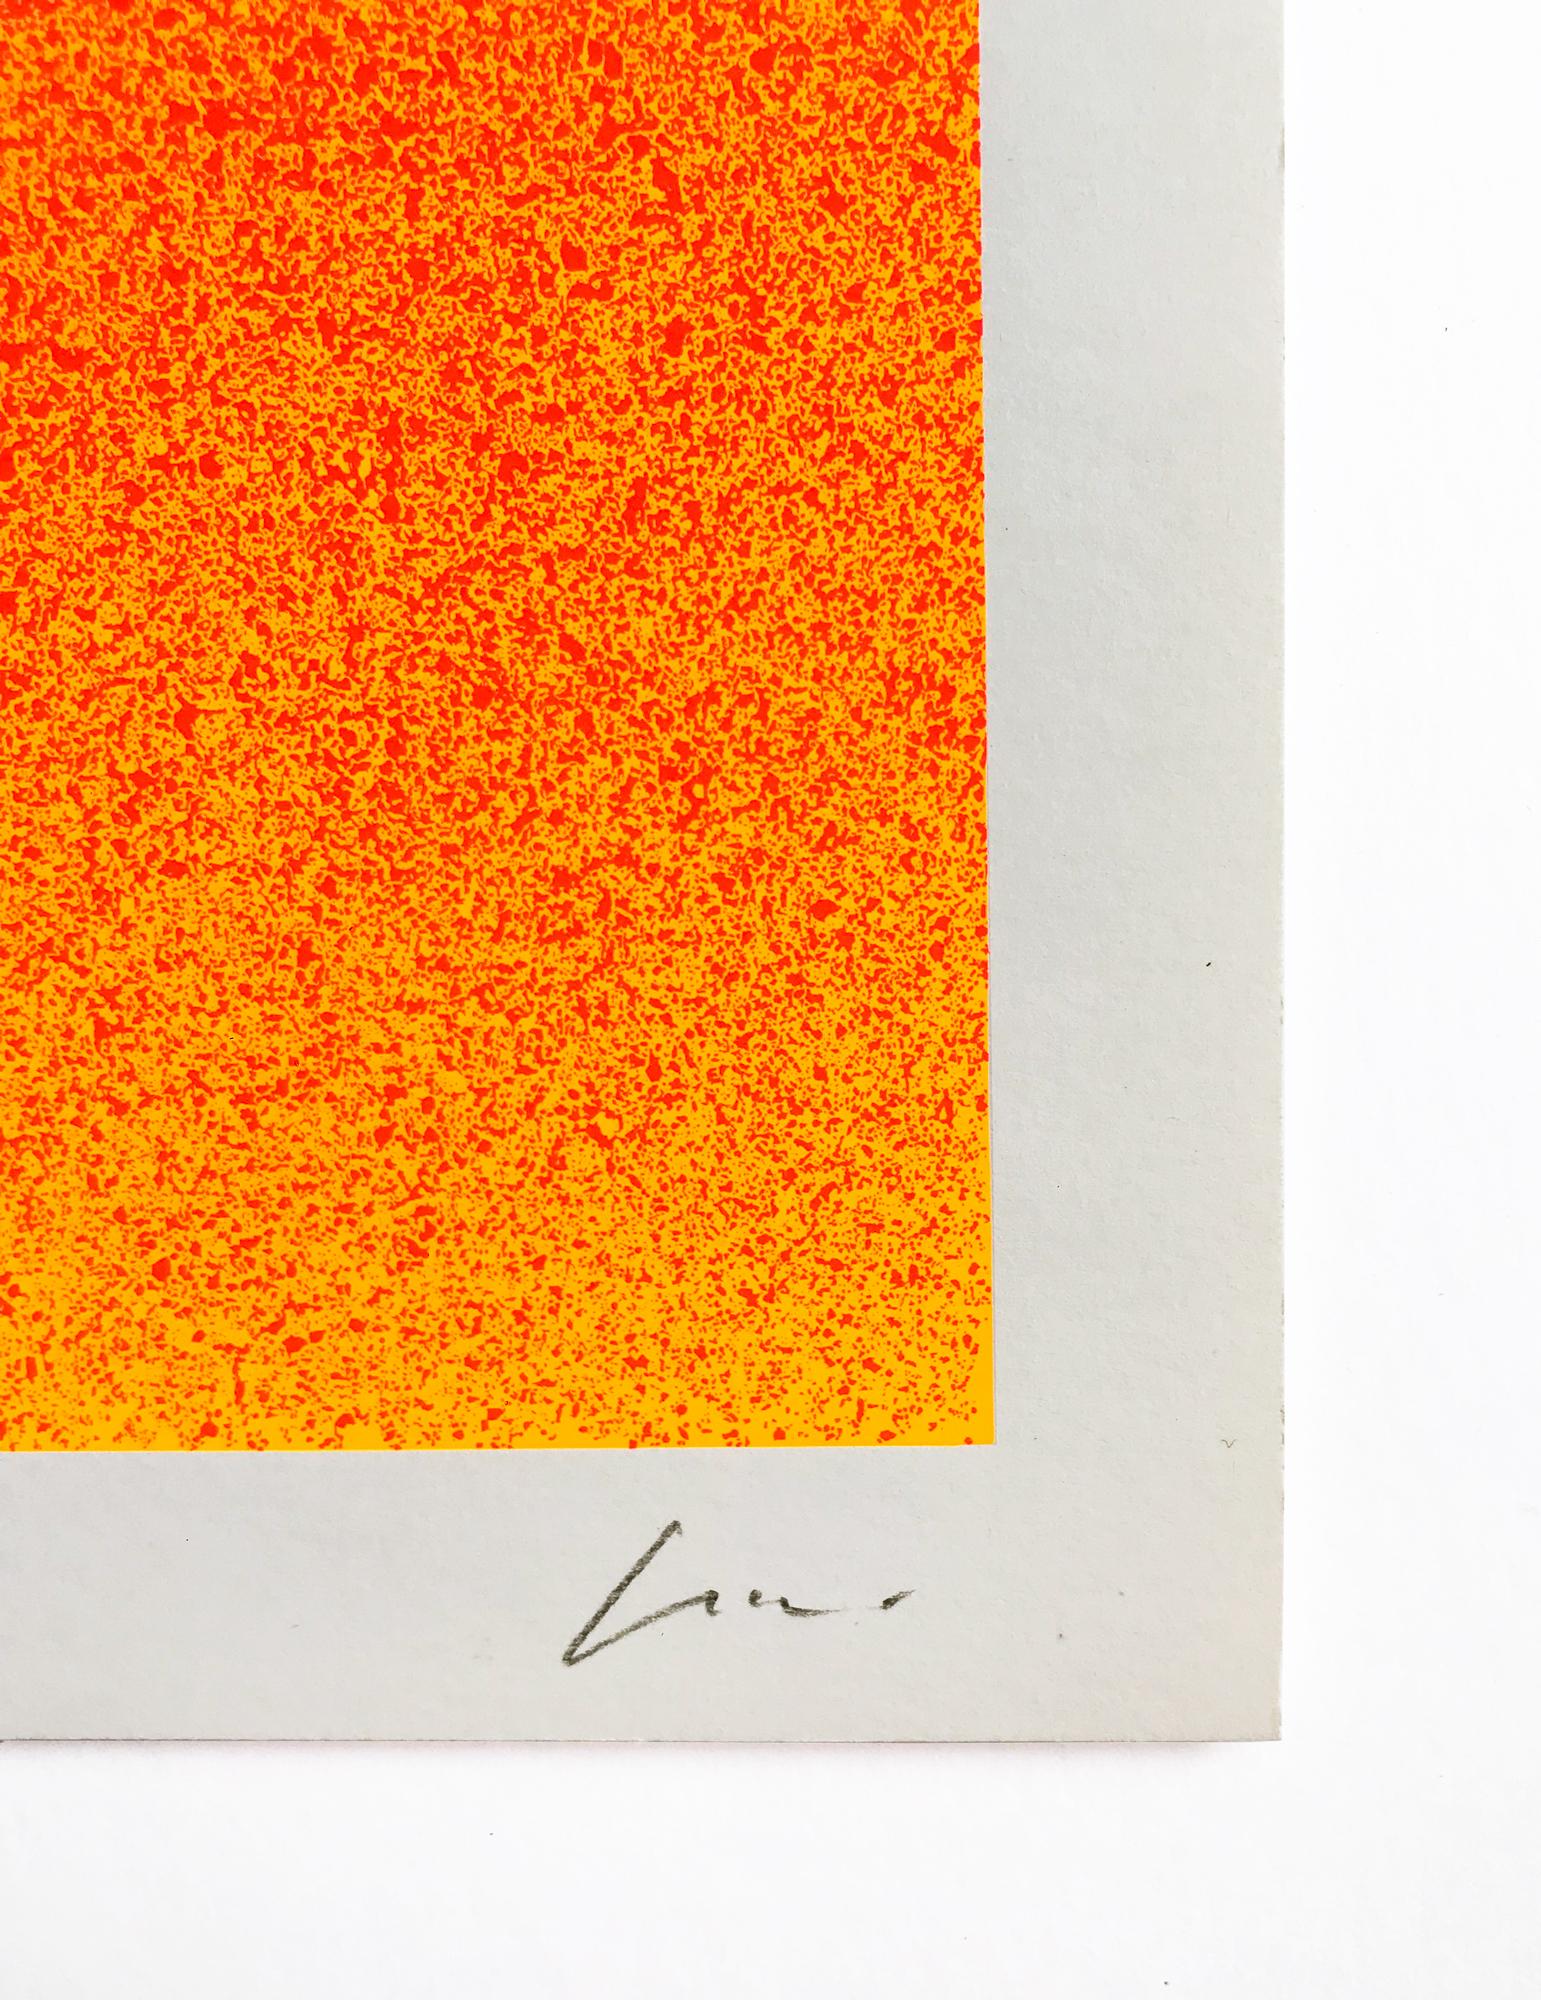 Rupprecht Geiger, Green on Orange, 1969, Screenprint, Abstract Art, Signed Print 1